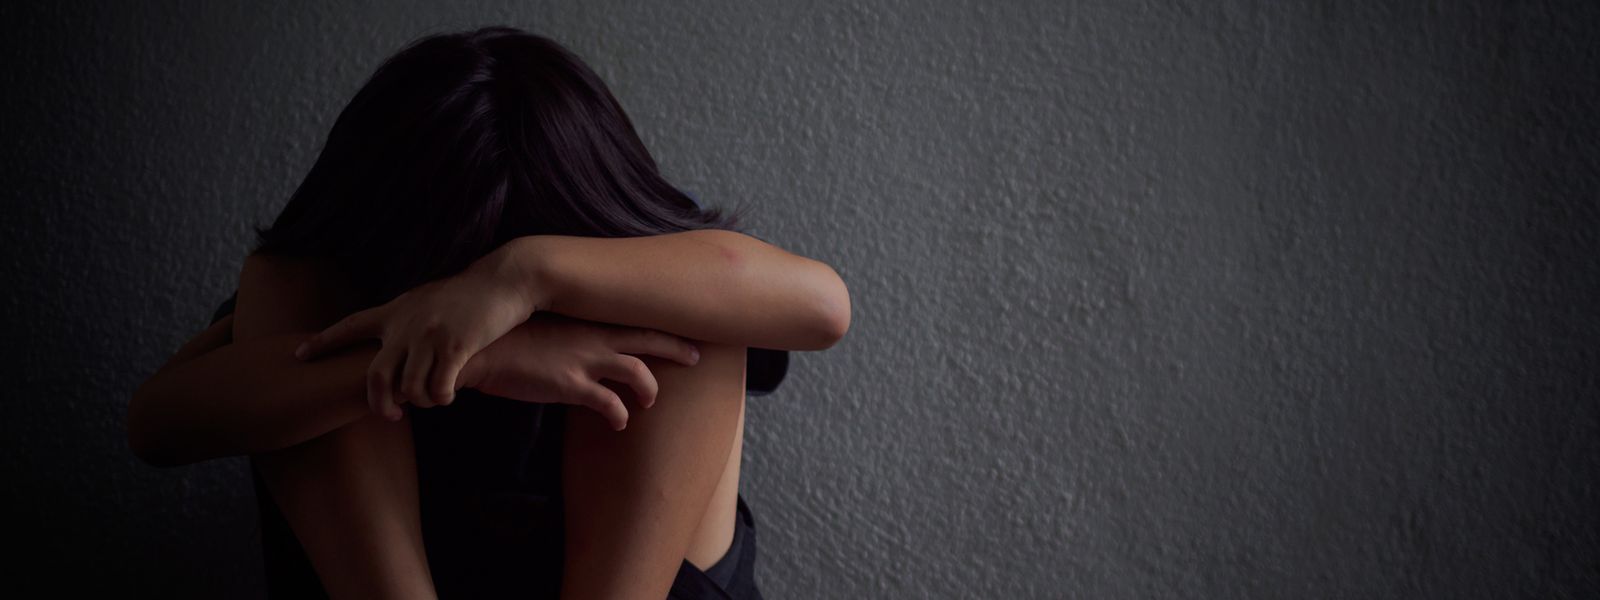 Die meisten Sexualstraftäter finden ihr Opfer in ihrem direkten und familiären Umfeld. 